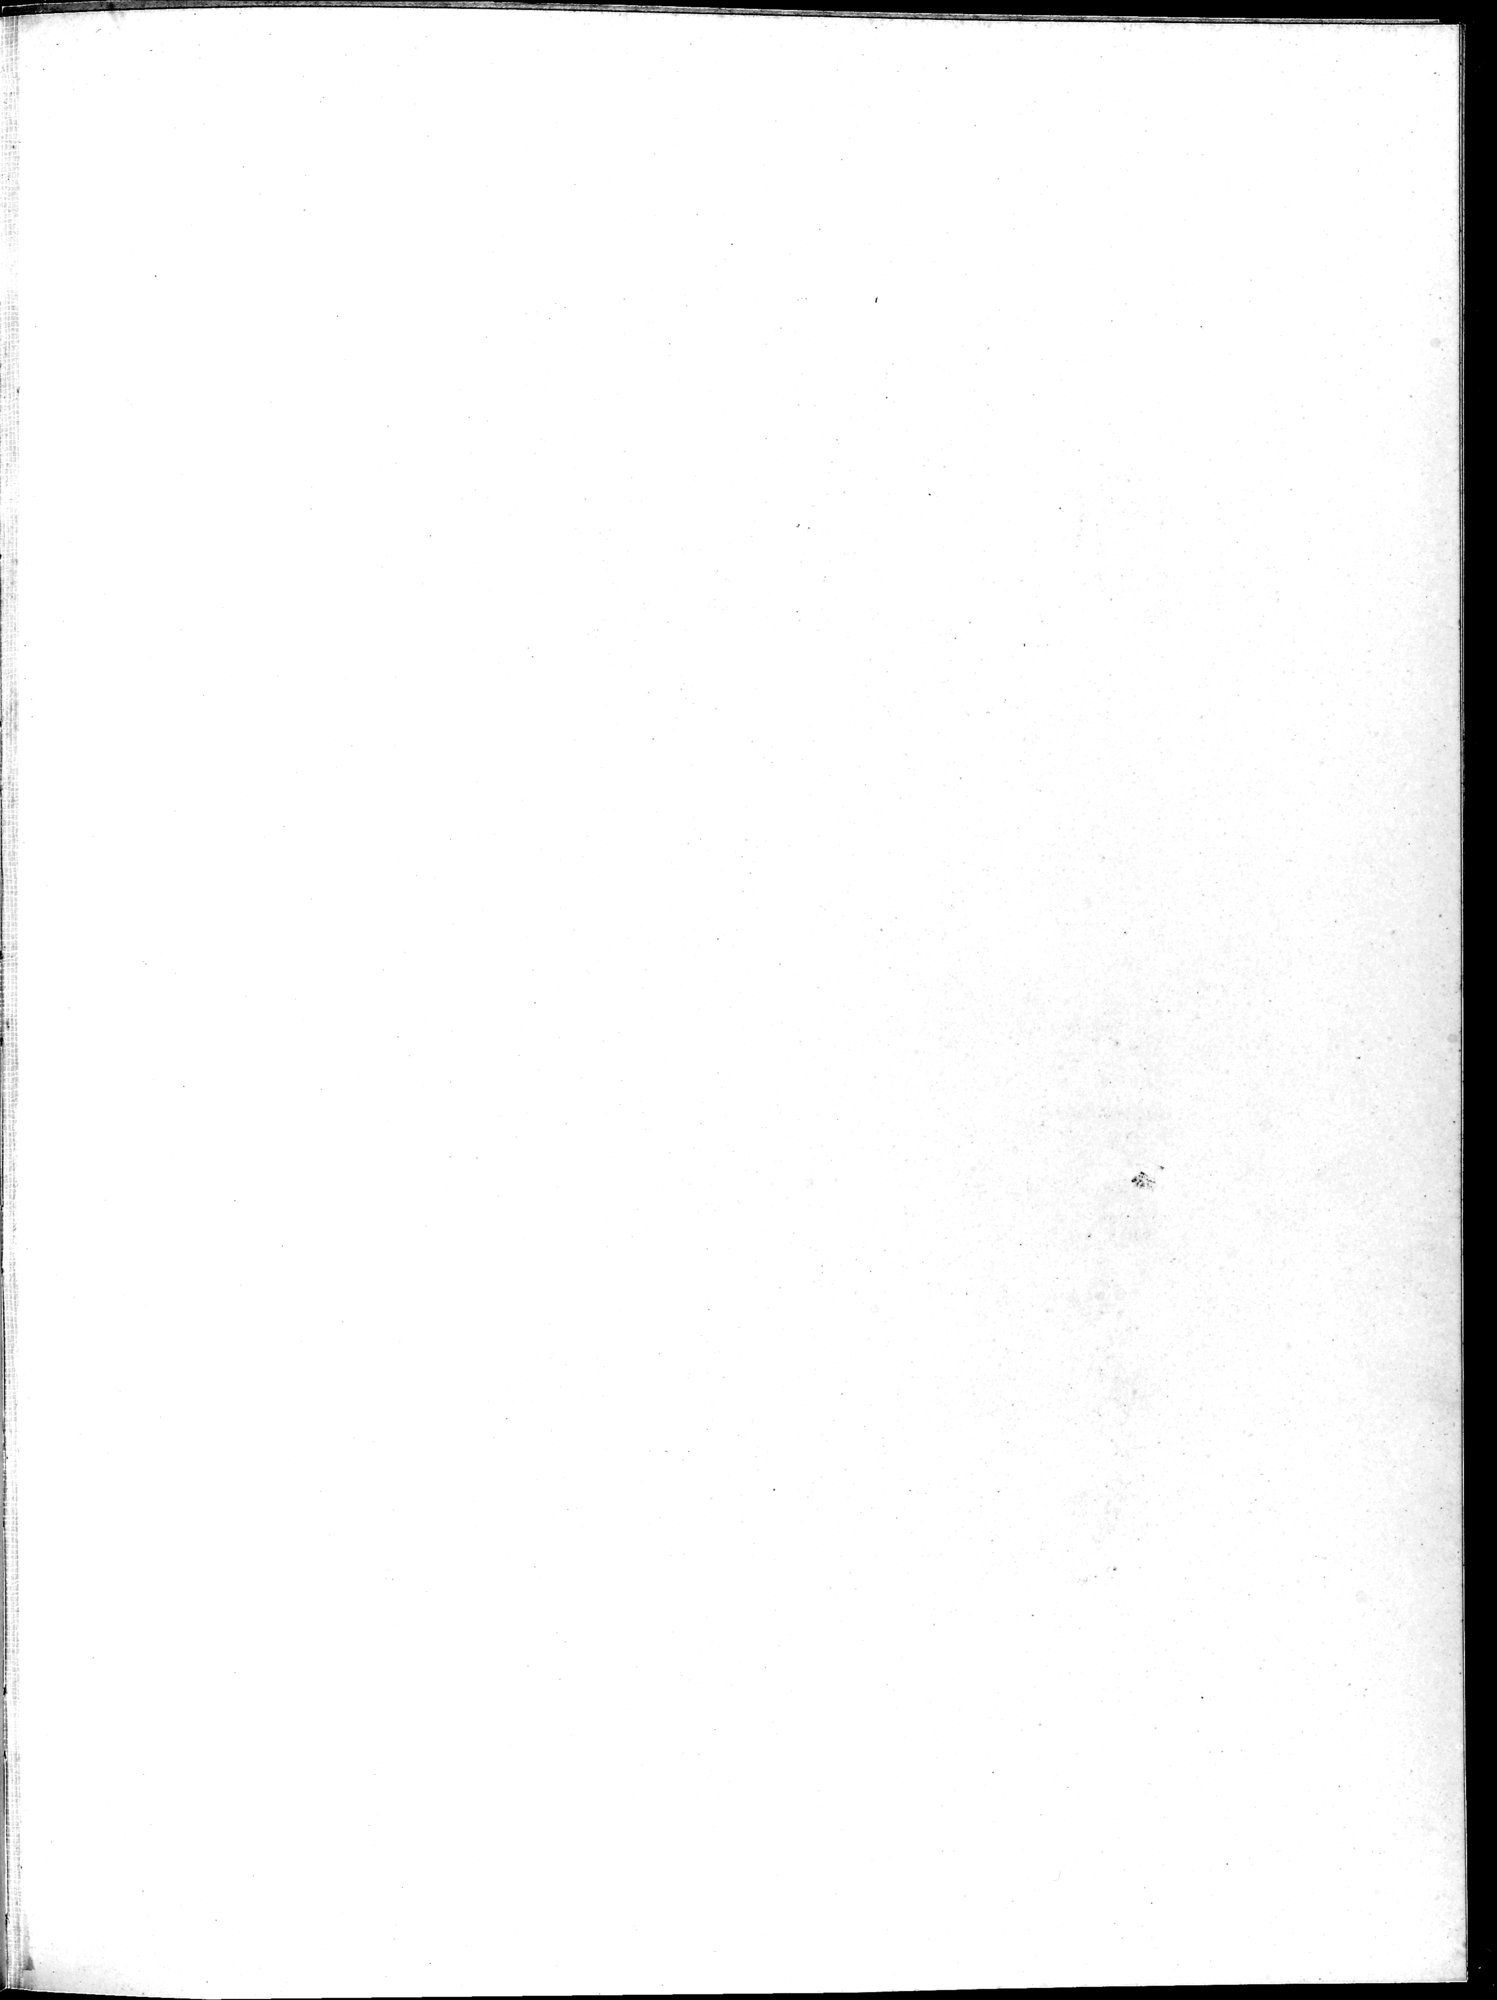 Die Buddhistische Spätantike in Mittelasien : vol.2 / Page 85 (Grayscale High Resolution Image)